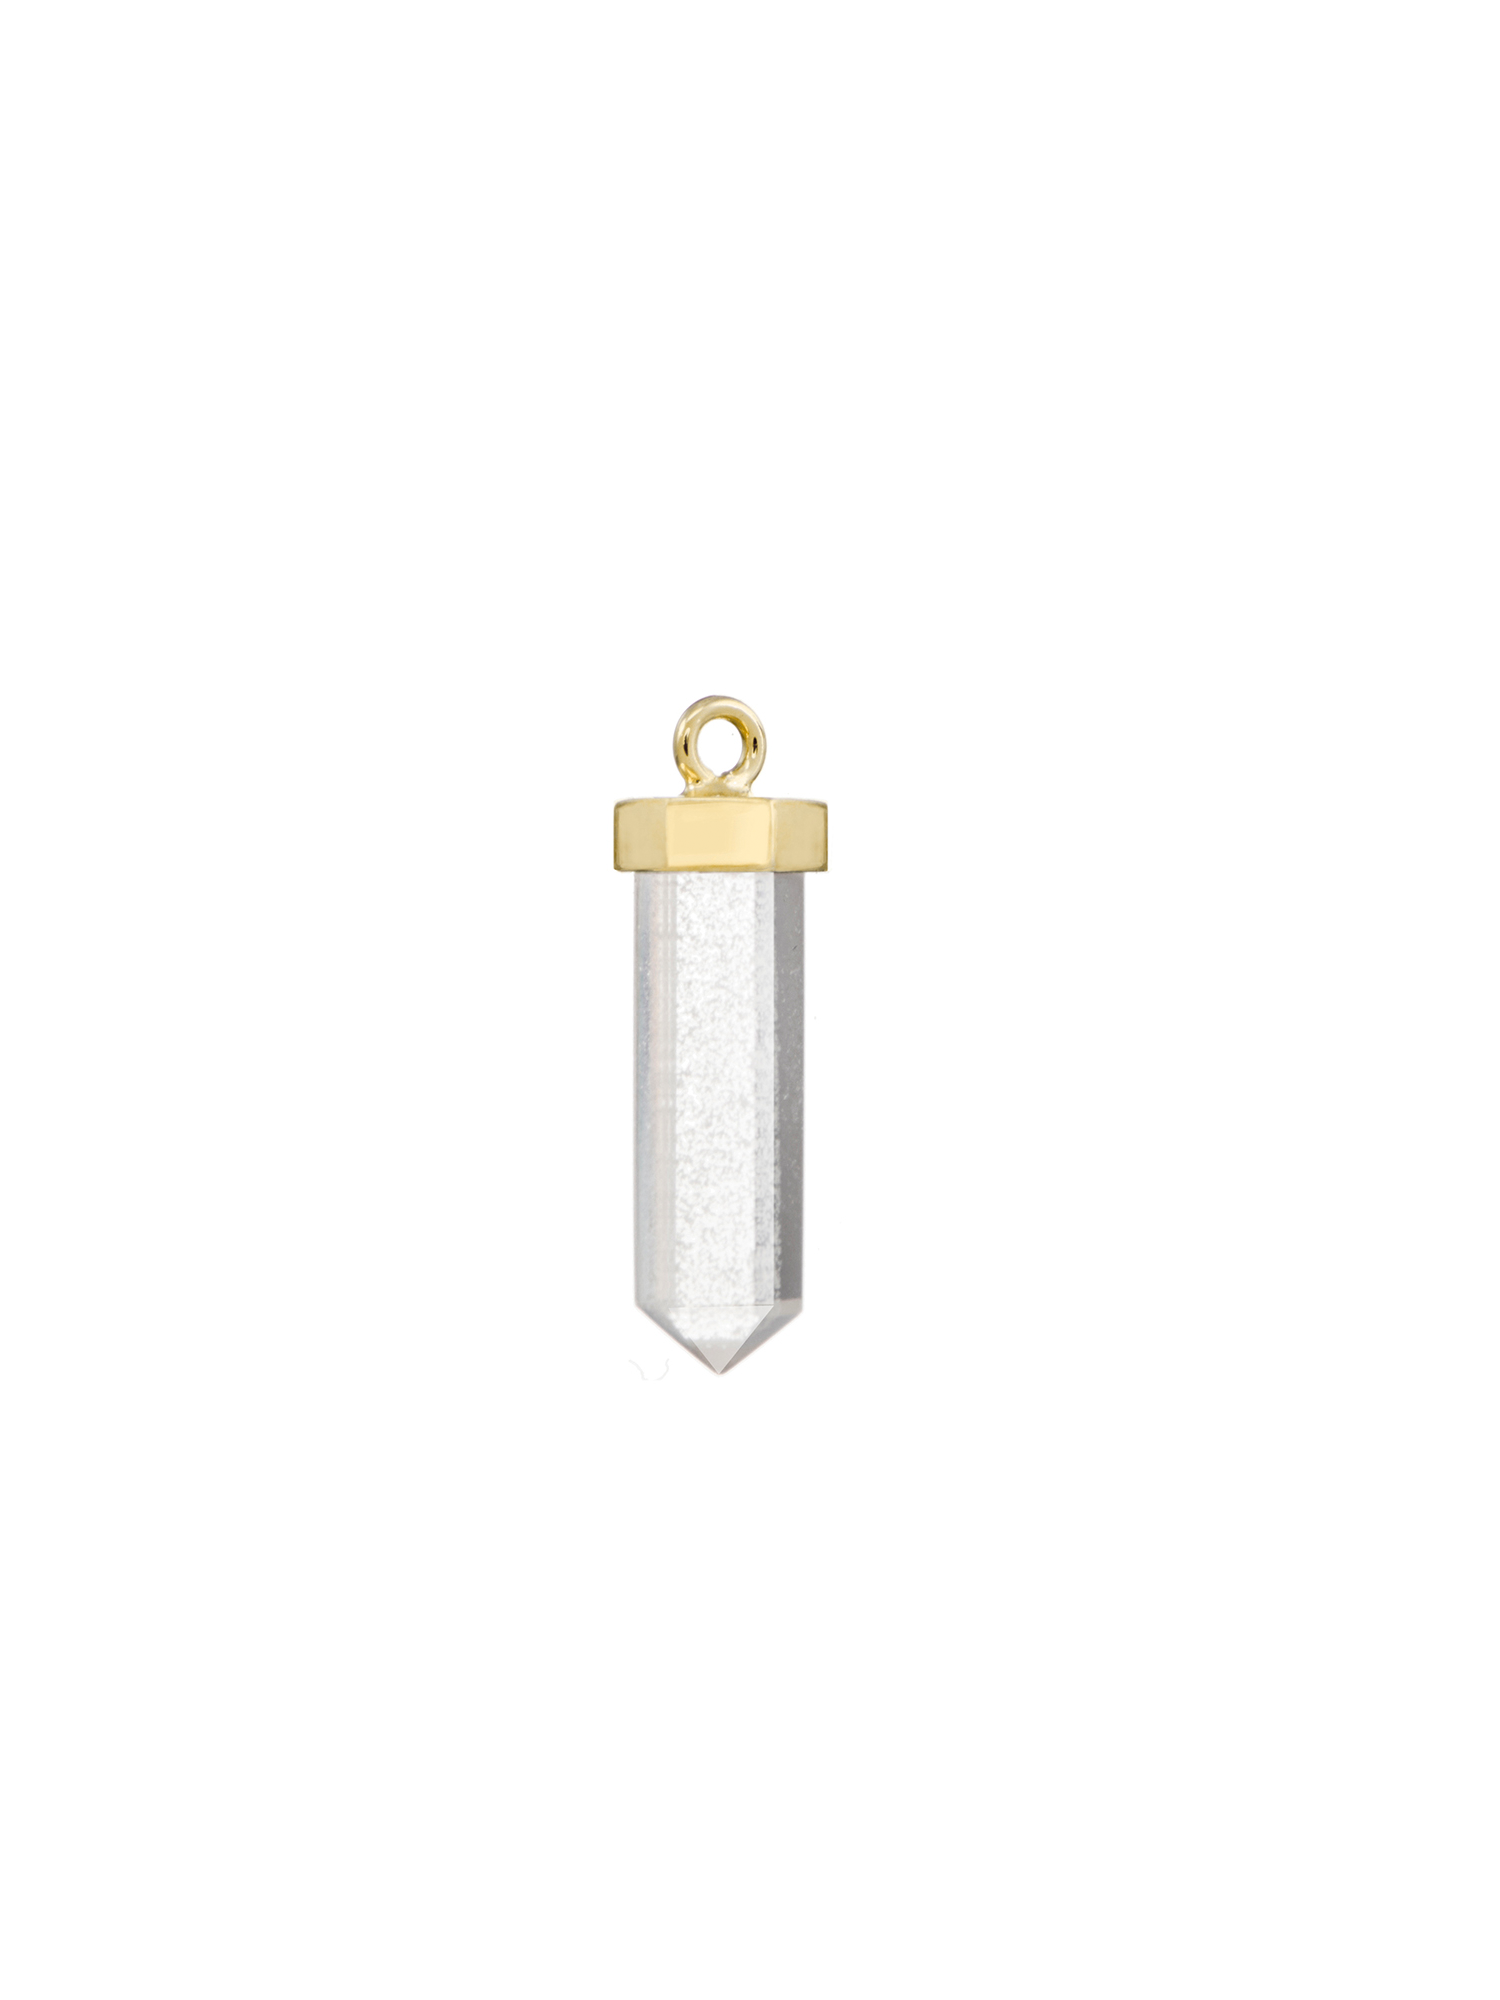 fire flies #2 earring charm | clear quartz